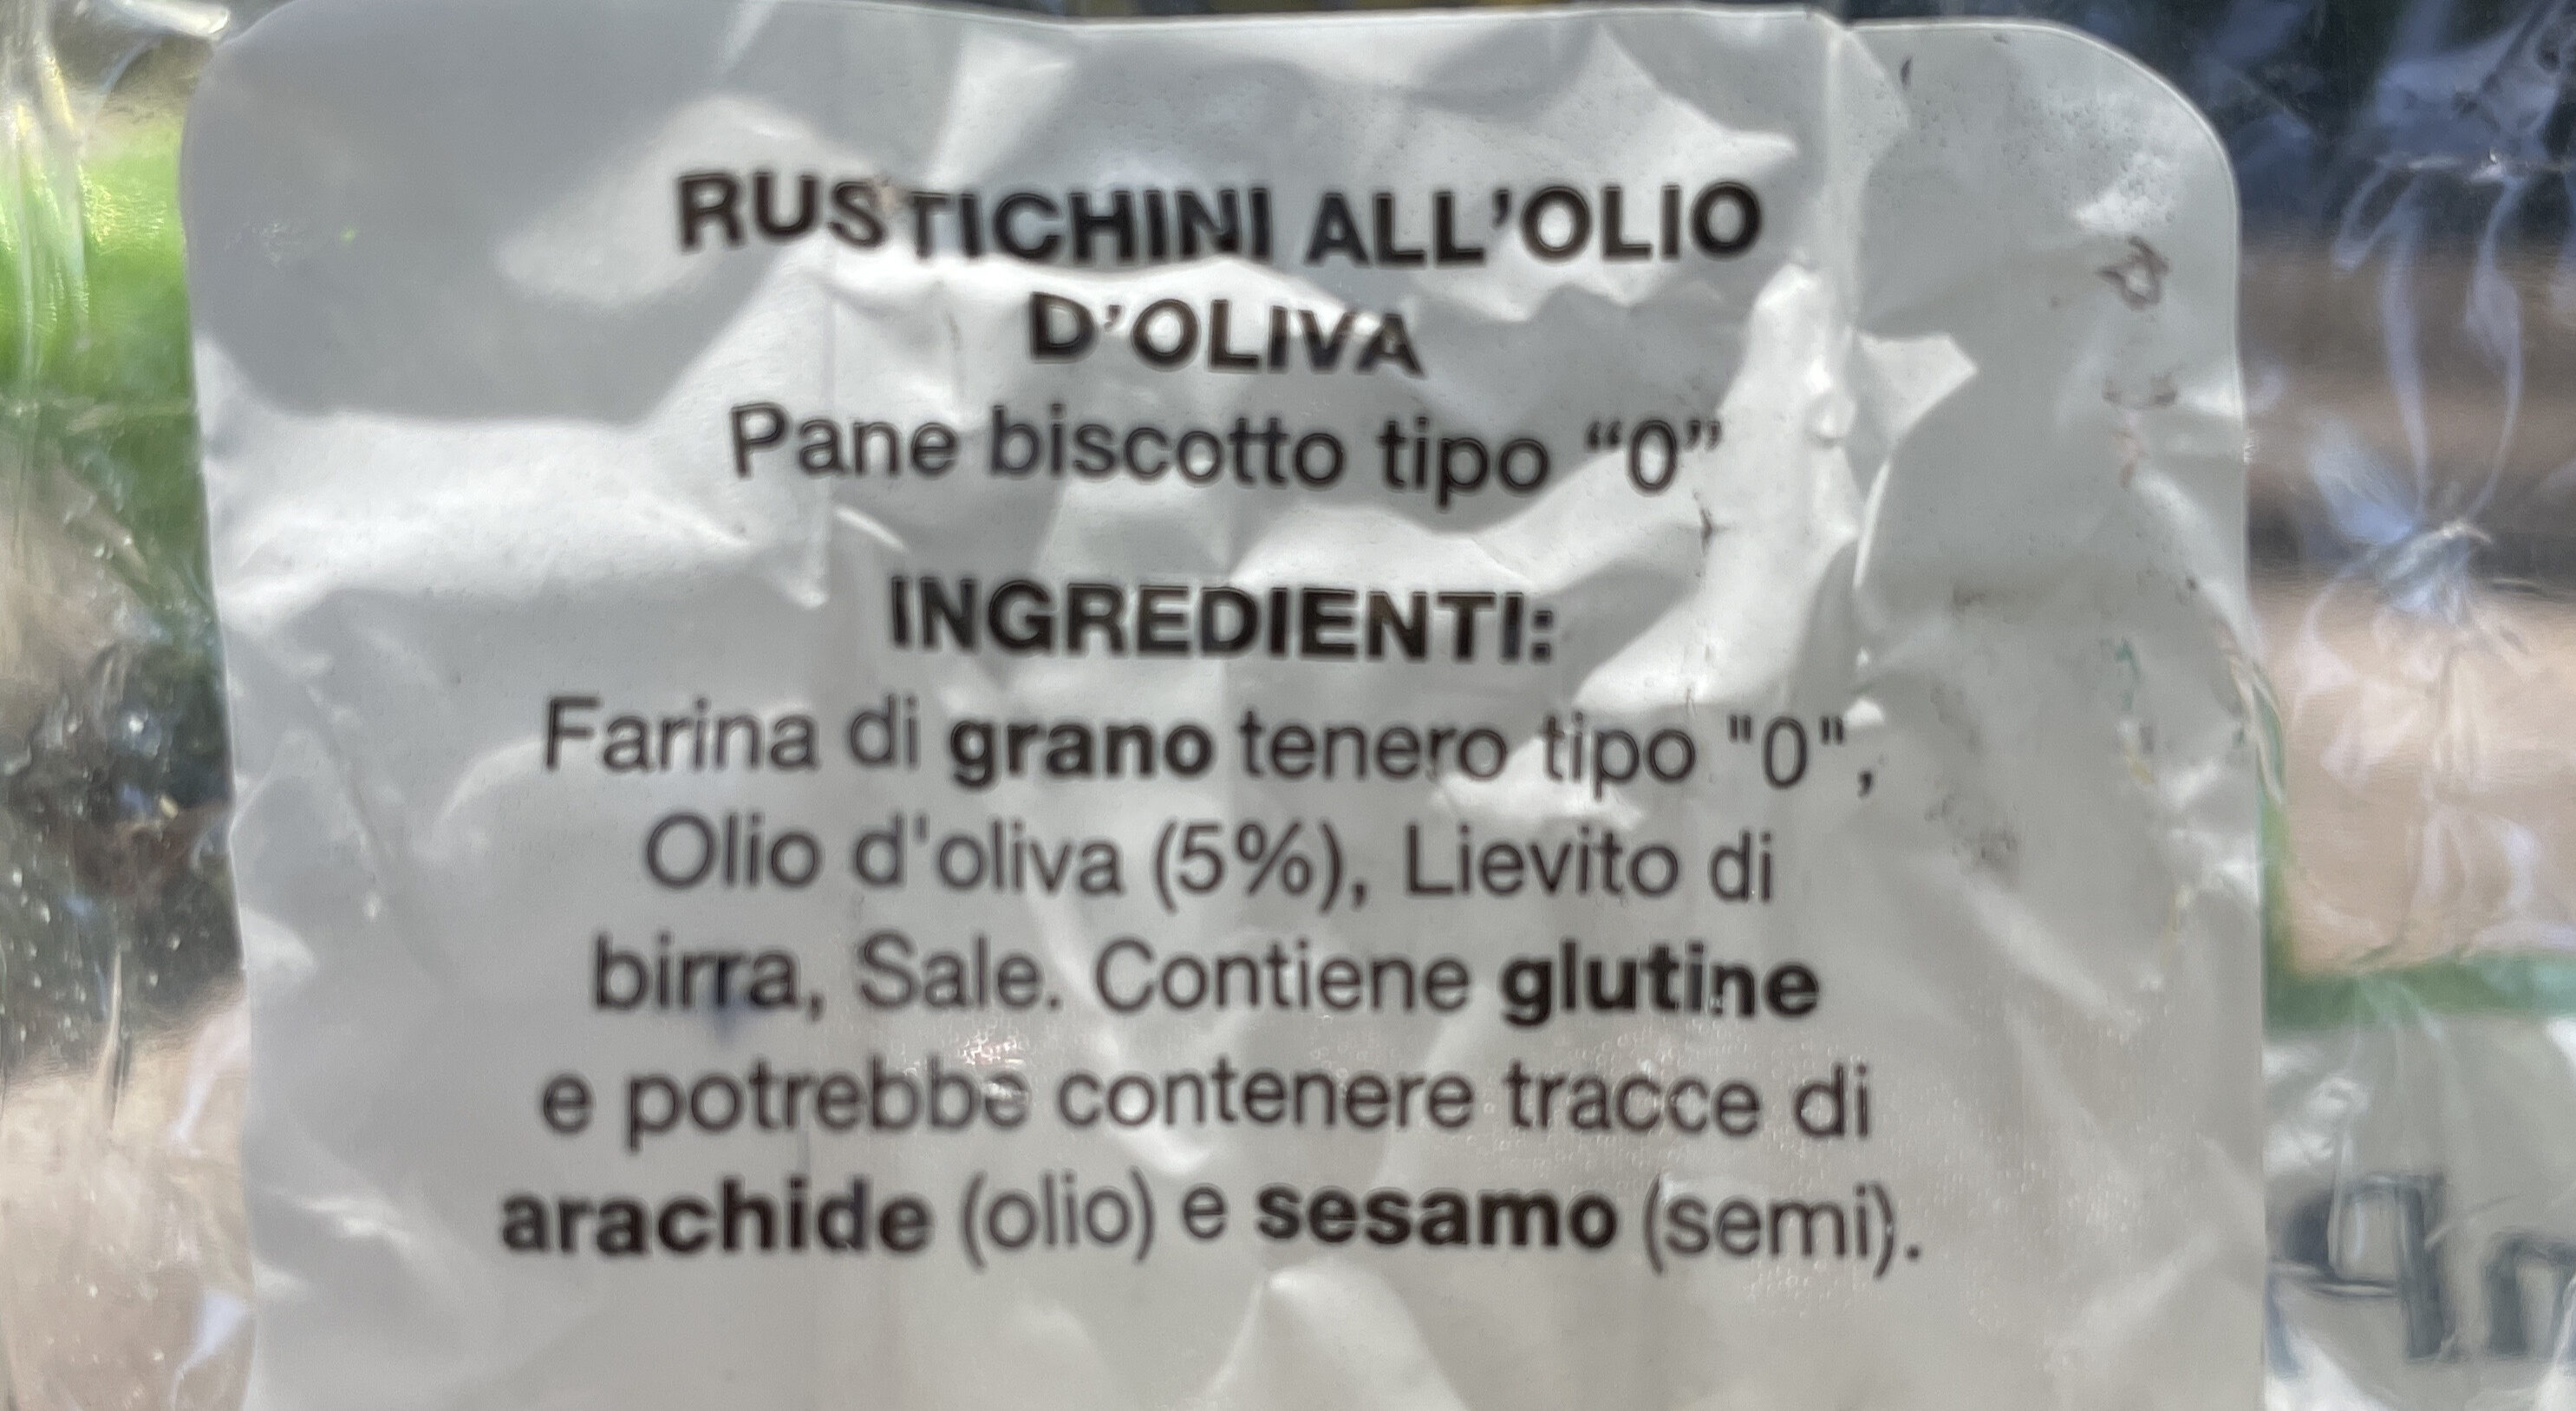 Rustichini all'olio d'oliva - Ingredienti - en